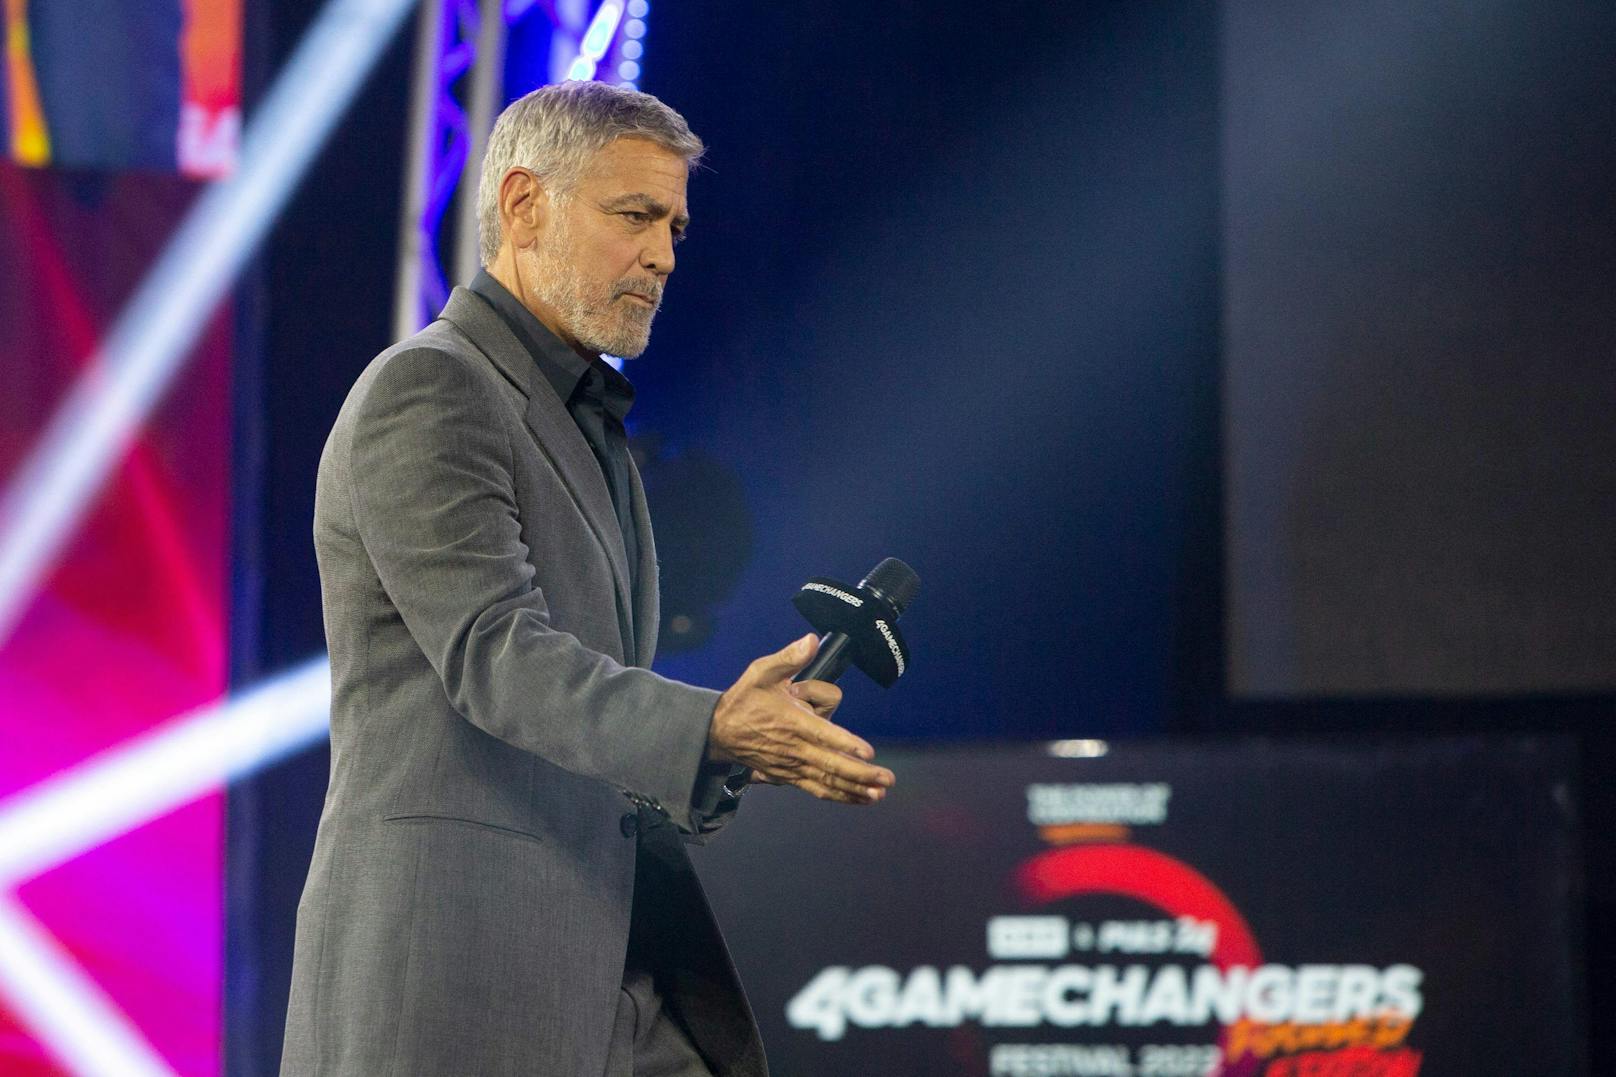 George Clooney war als Ehrengast geladen und freute sich über den Besuch in Wien.